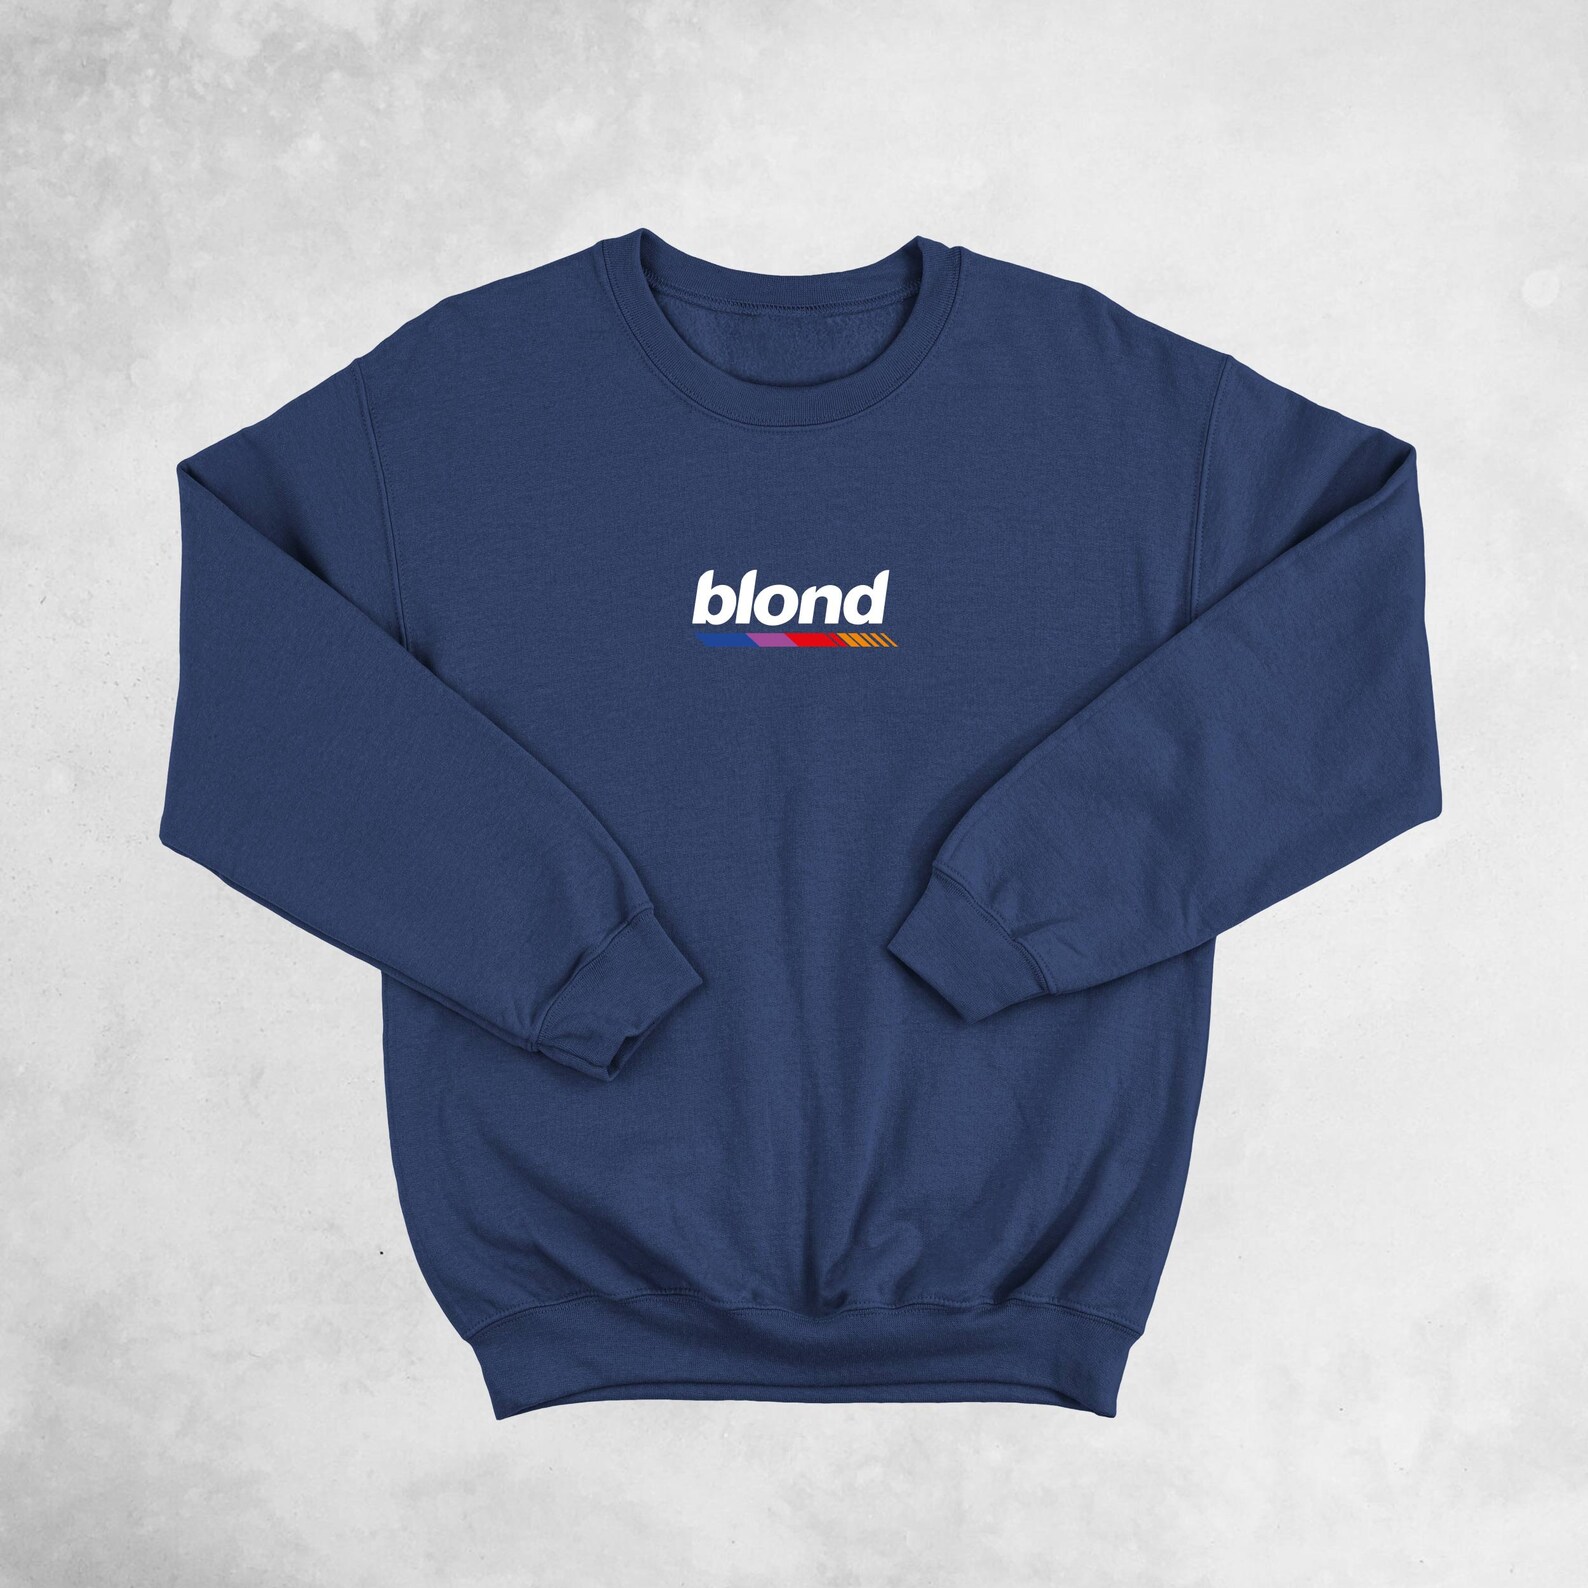 Frank Ocean Inspired Blond Sweatshirt Vintage Crewneck | Etsy